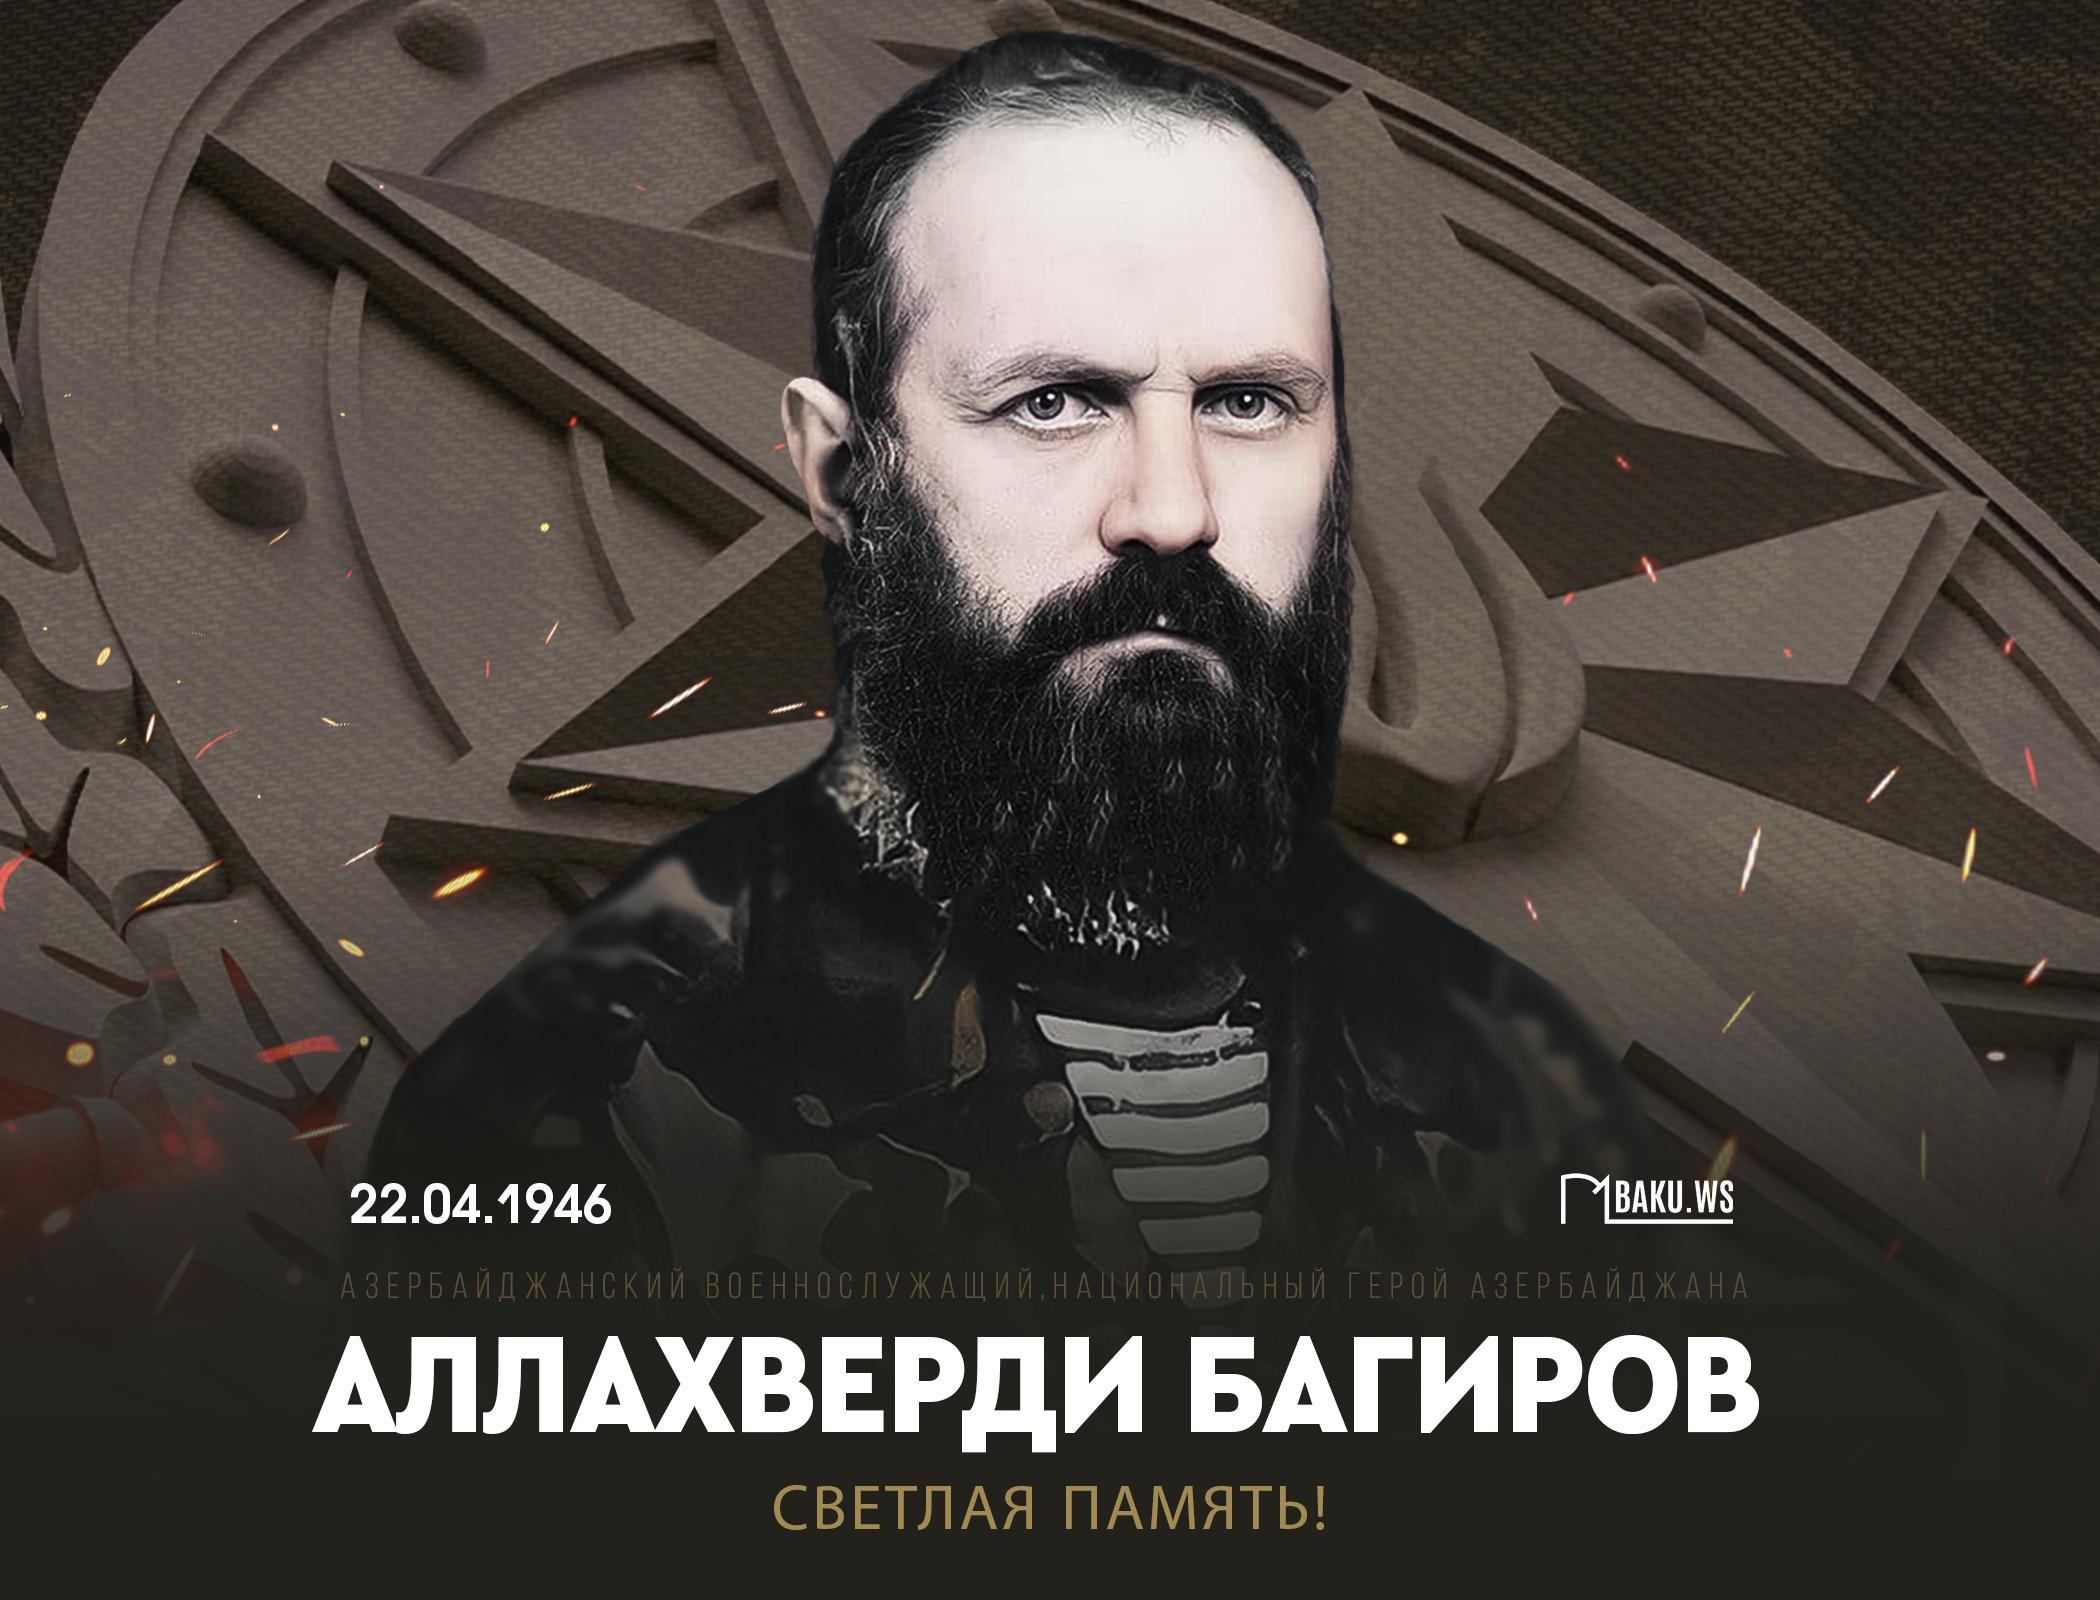 Сегодня день рождения легендарного командира Аллахверди Багирова